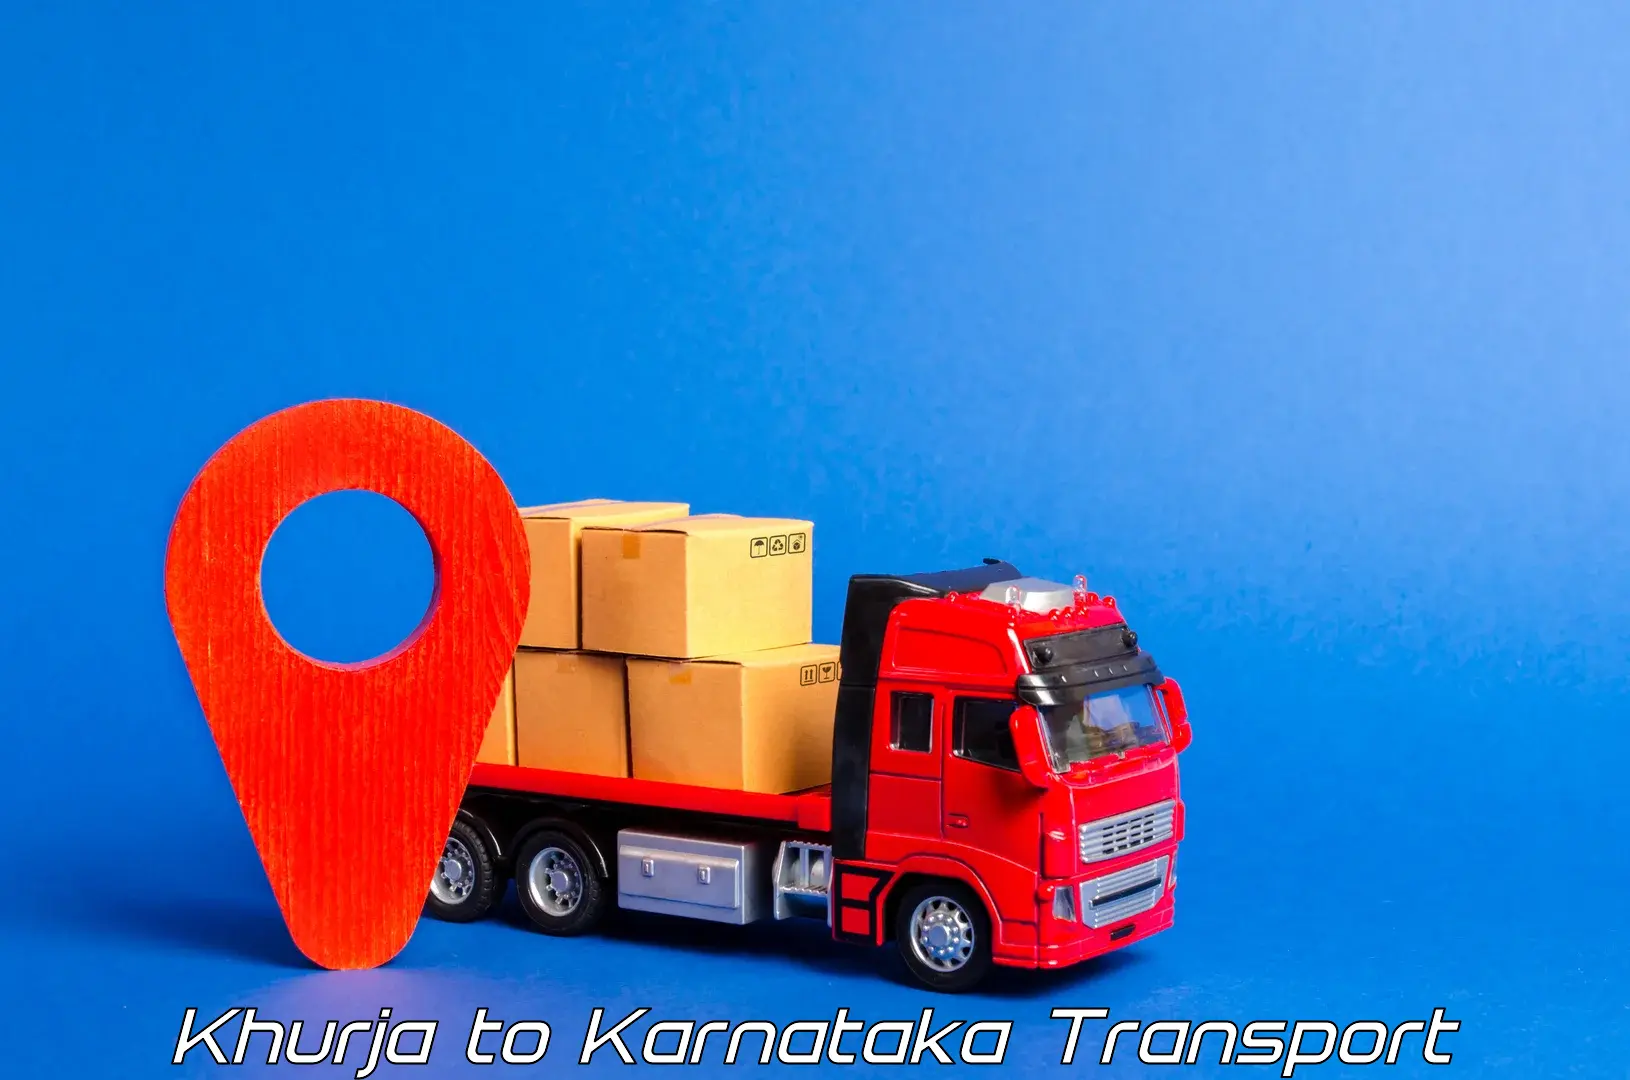 Vehicle transport services in Khurja to Chikkaballapur